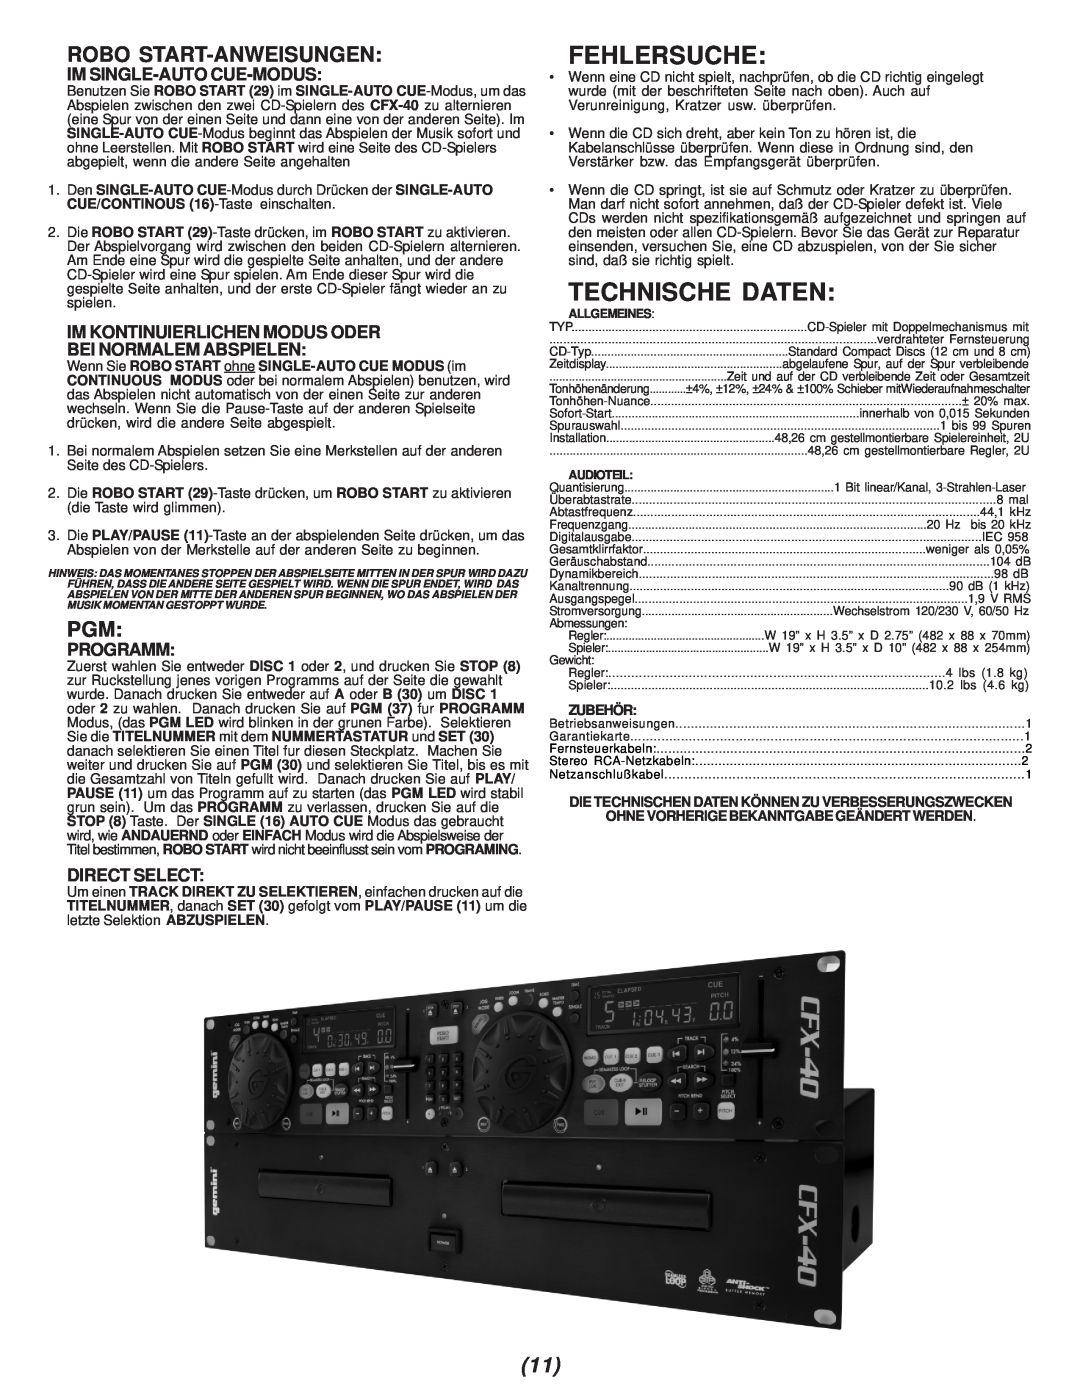 Gemini CFX-40 manual Fehlersuche, Technische Daten, Robo Start-Anweisungen 